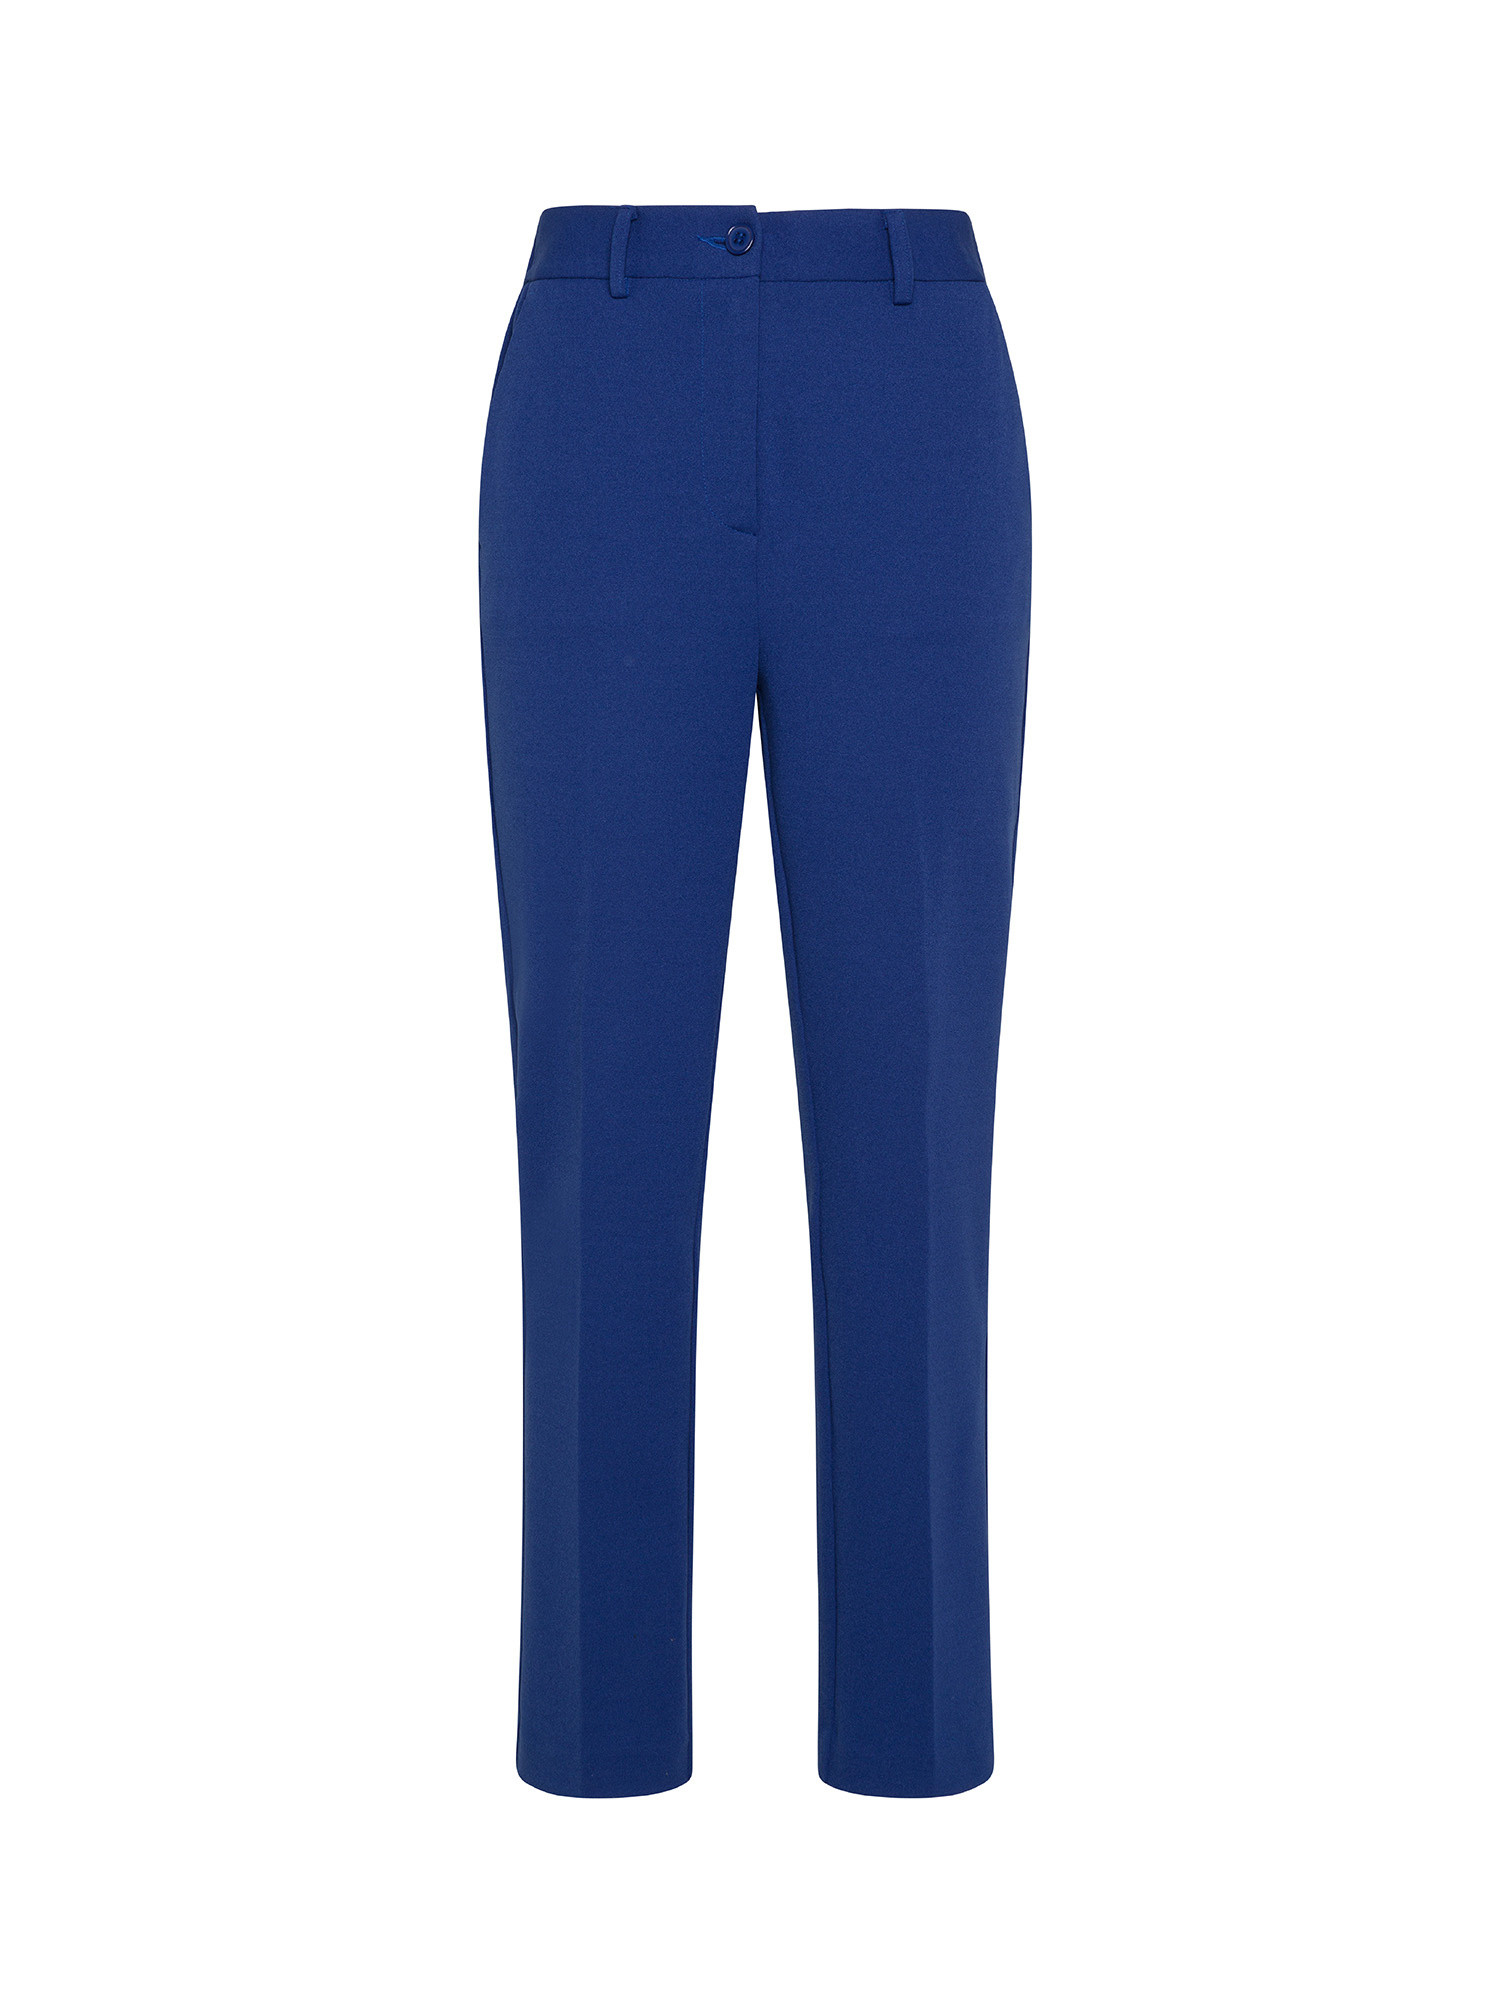 Koan - Pantaloni in crepe, Blu royal, large image number 0